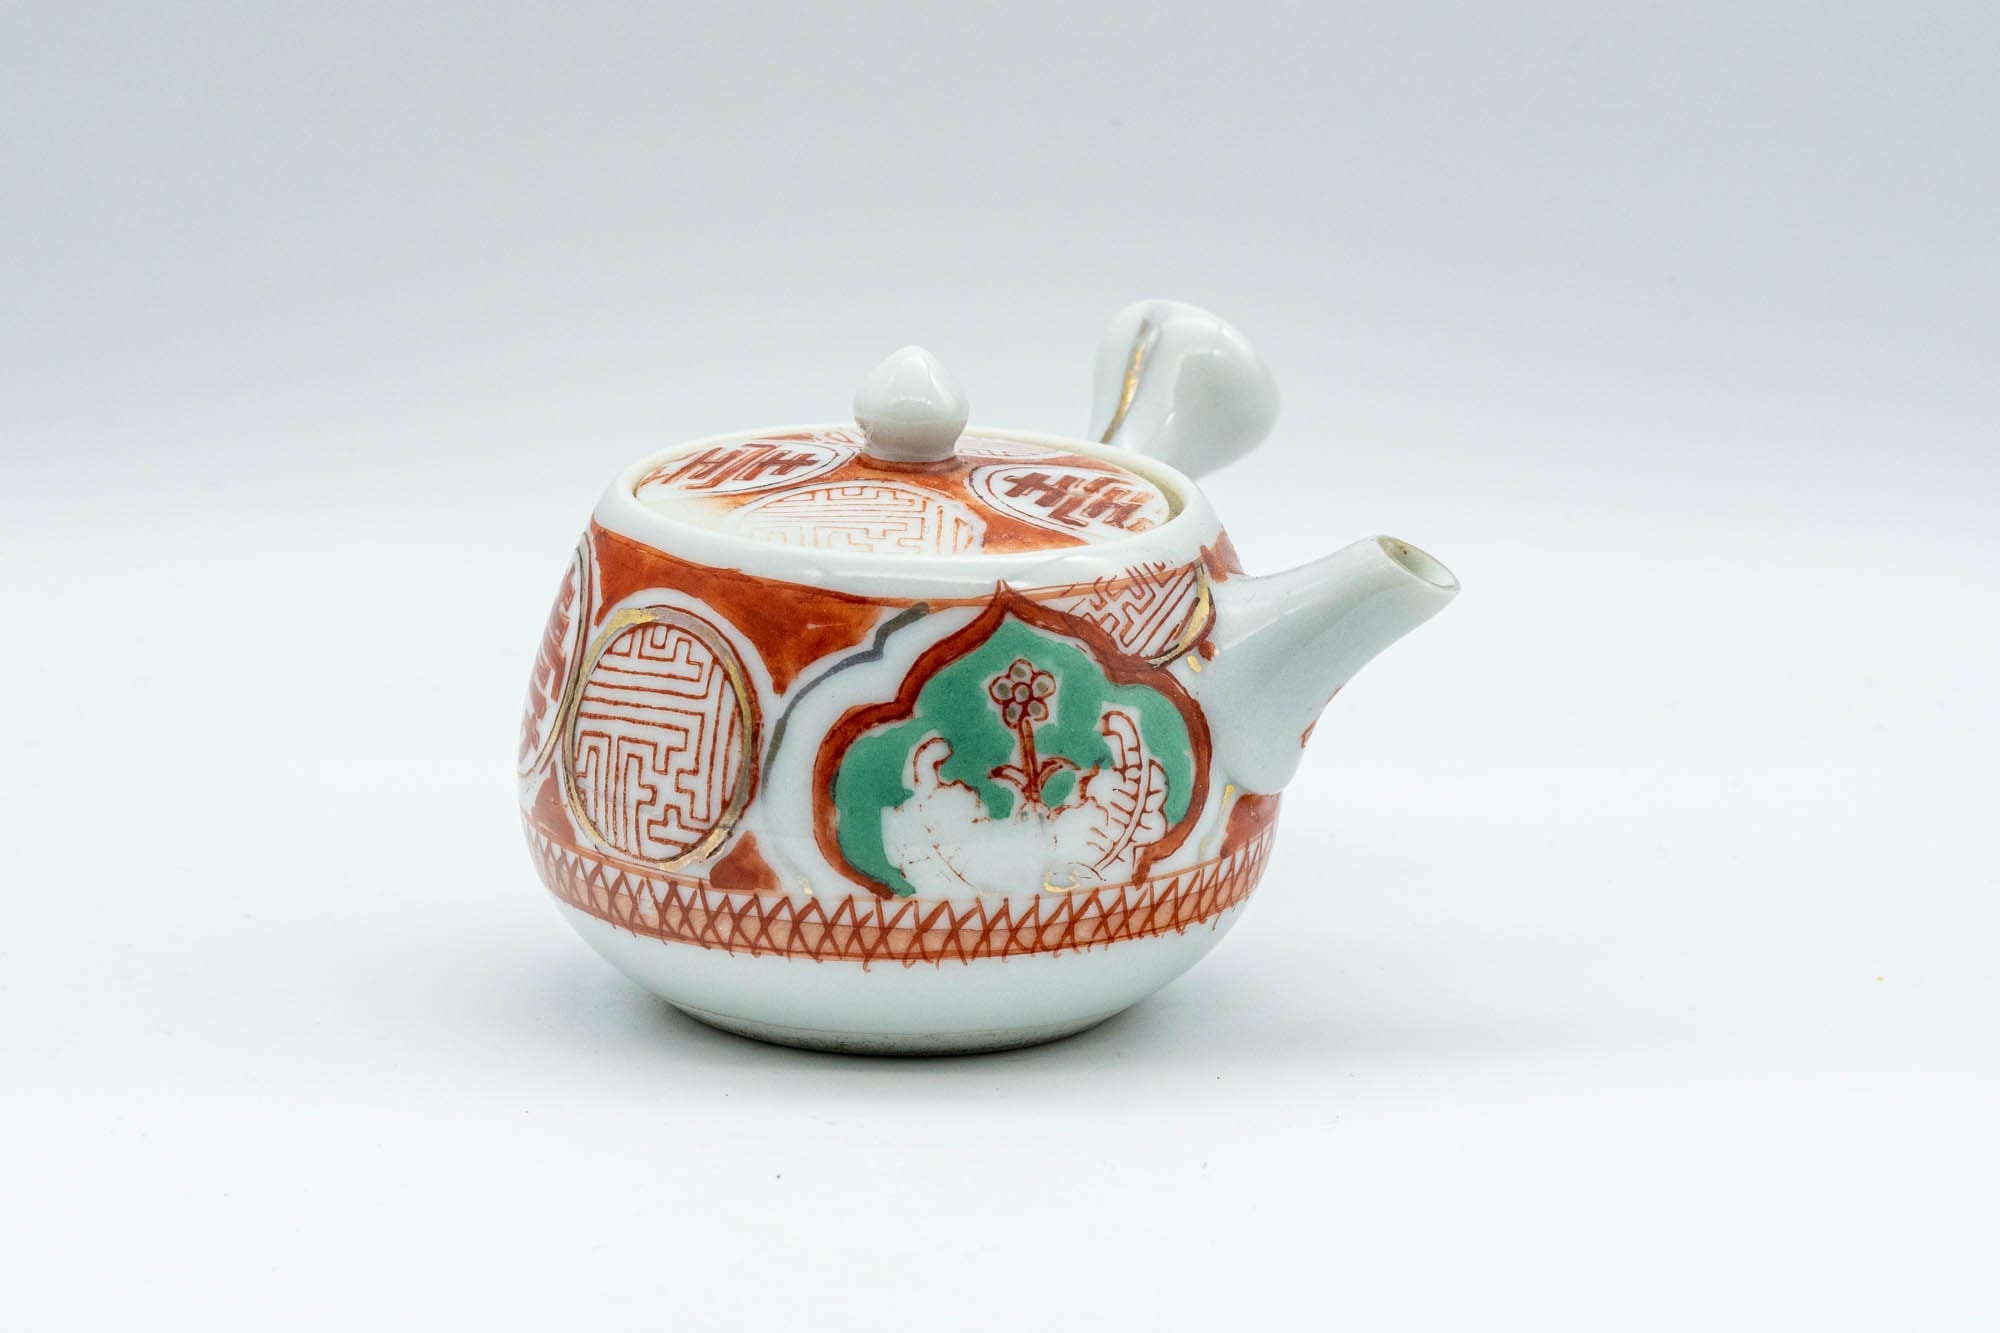 Japanese Kyusu - 壽 Kotobuki Kutani-yaki Porcelain Do-ake Teapot - 100ml